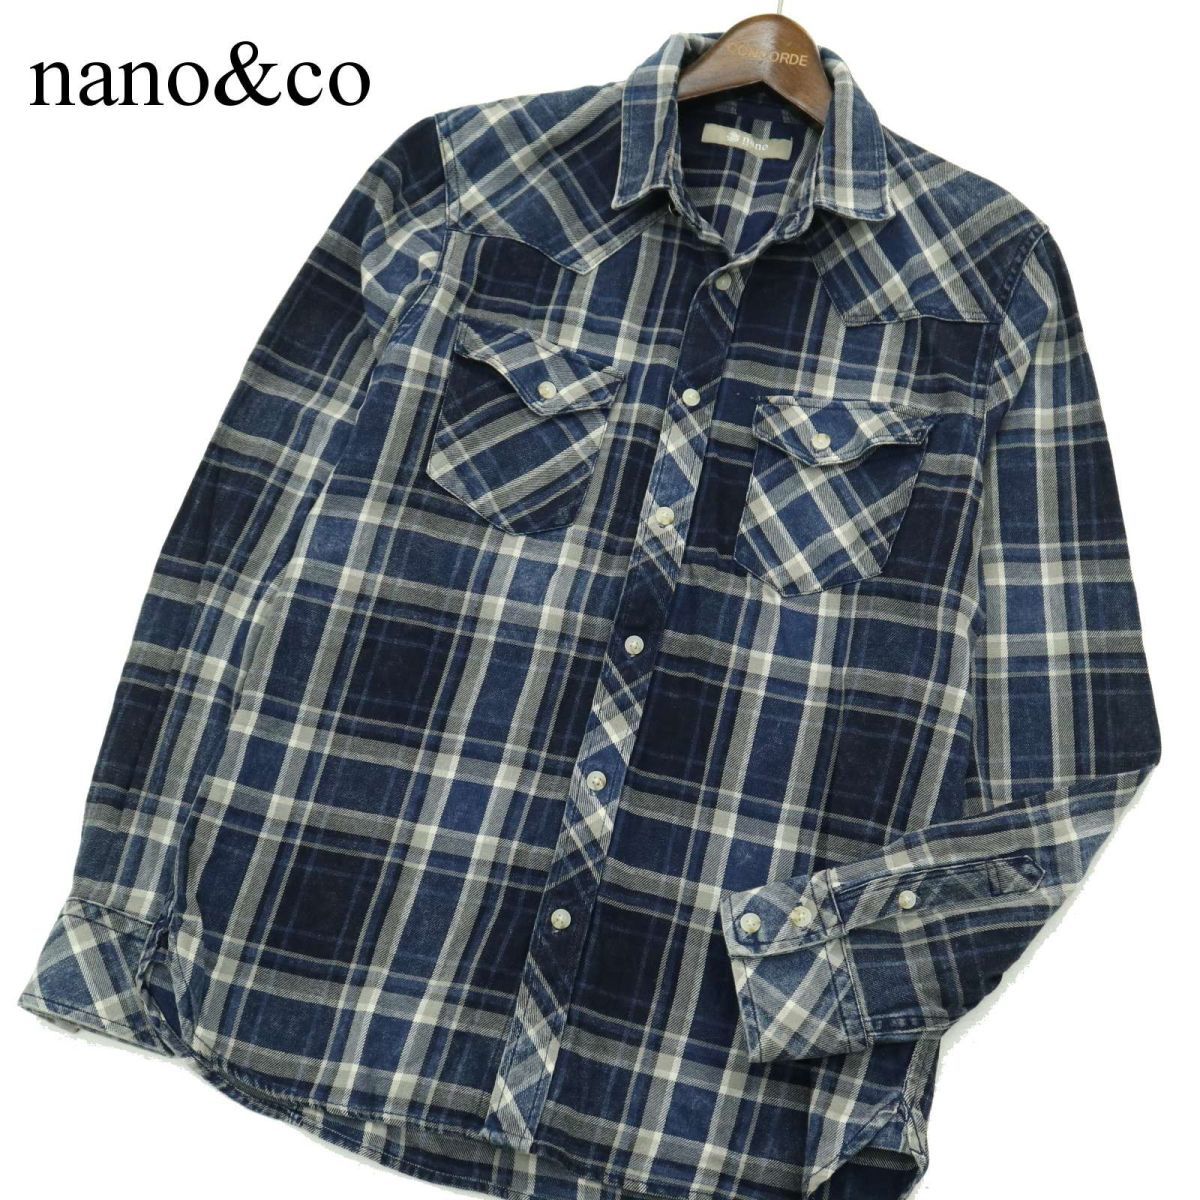  прекрасный товар * nano&co Nano Universe через год длинный рукав Western индиго проверка рубашка Sz.L мужской A3T09822_8#C